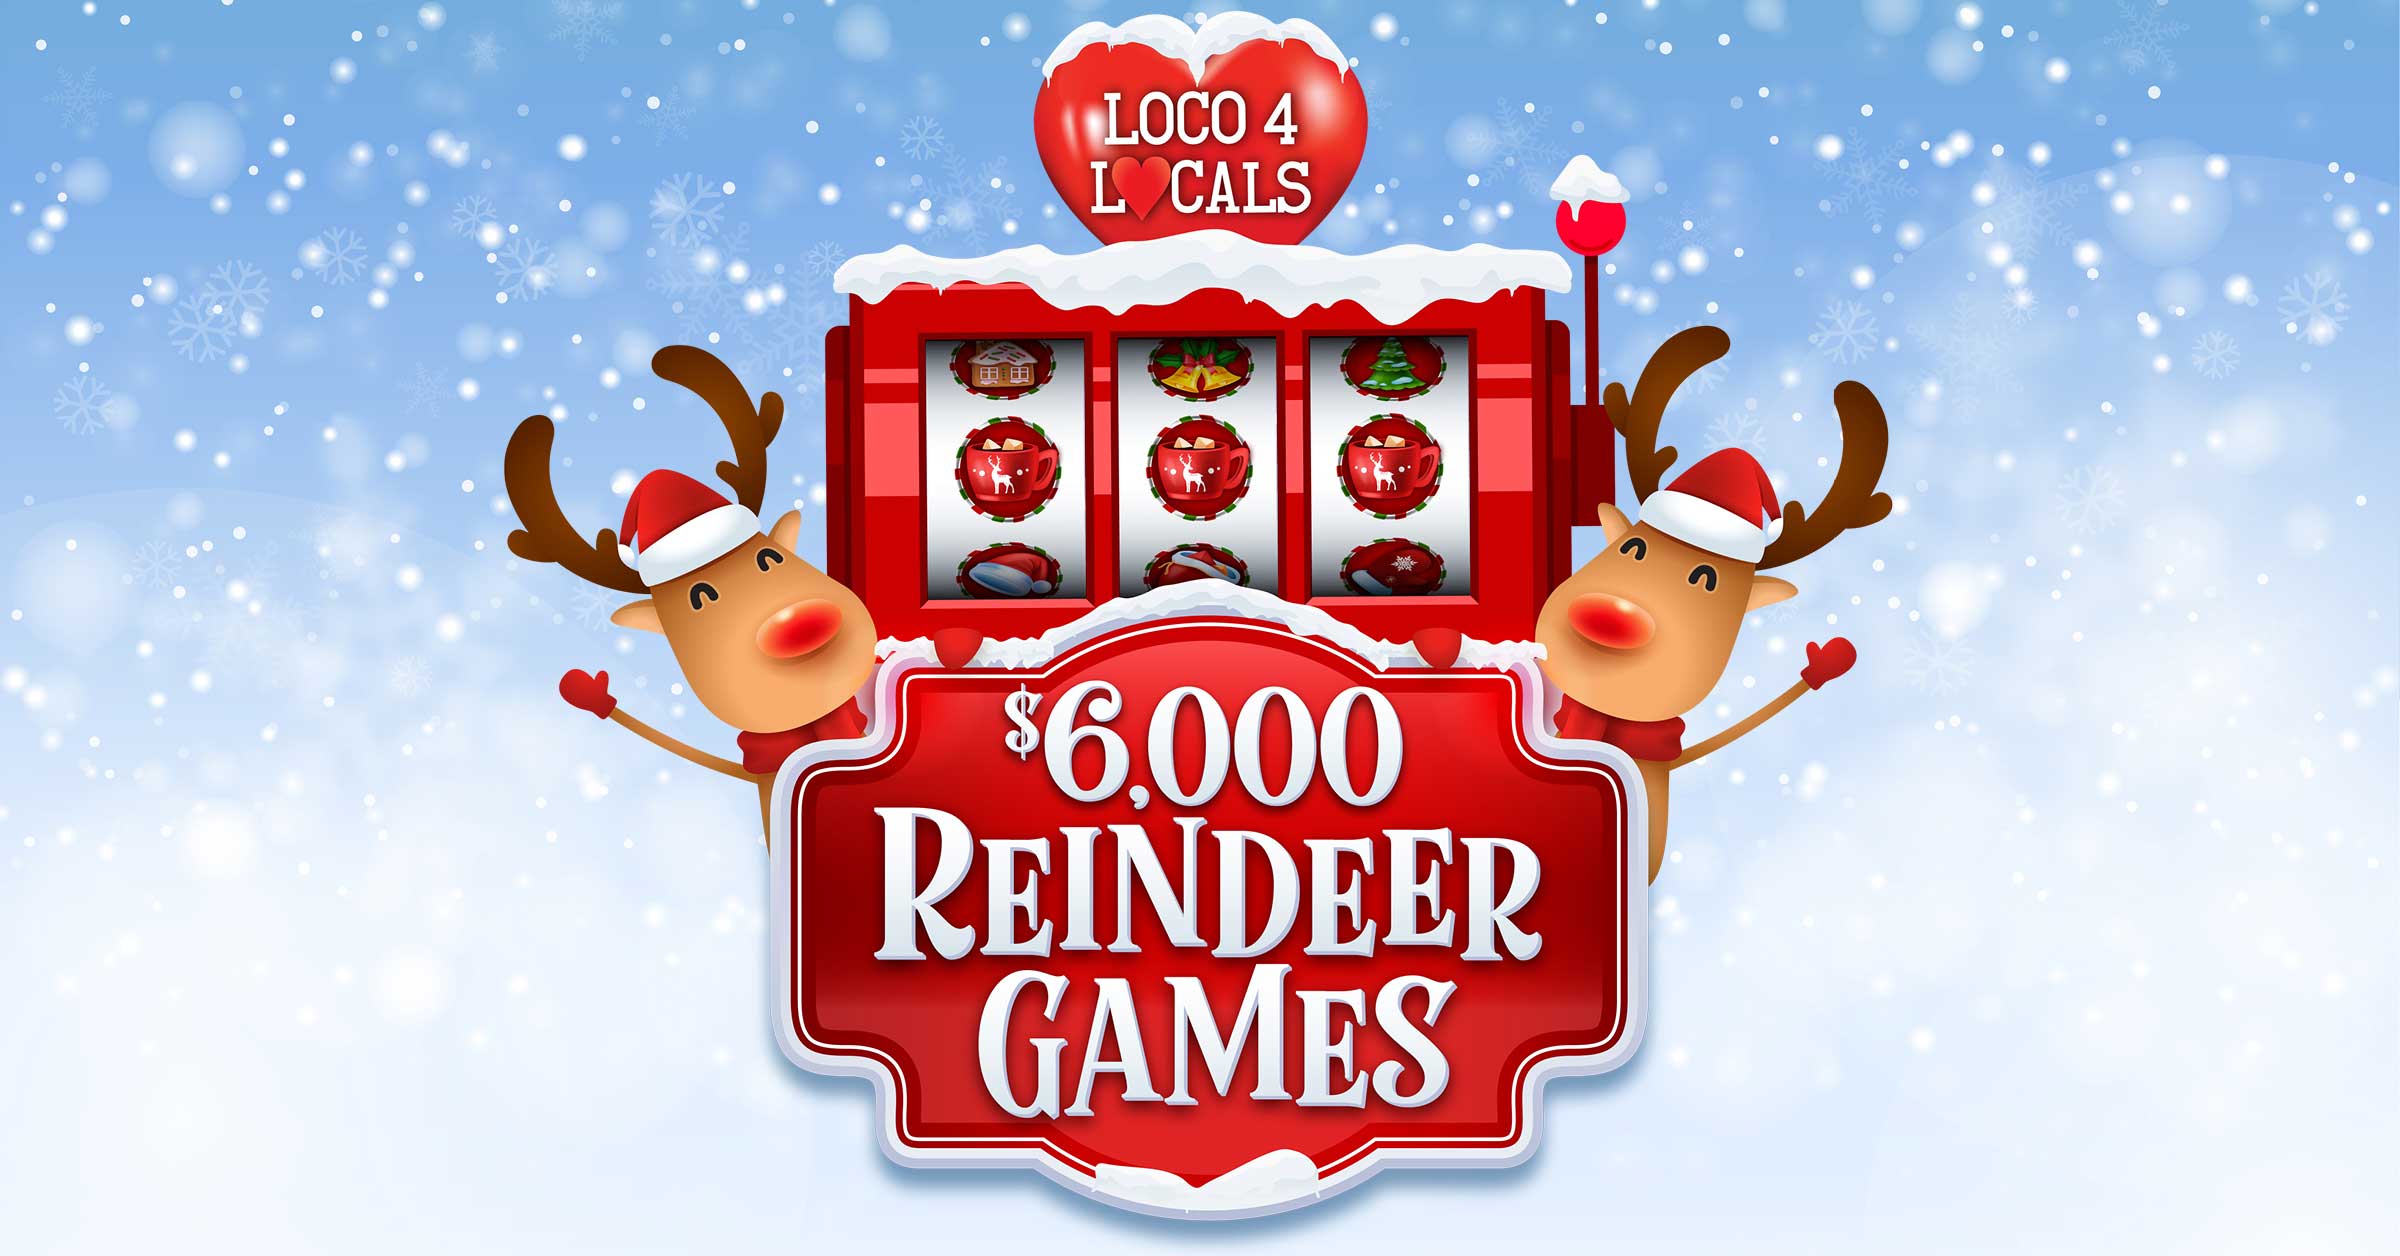 $6,000 Reindeer Games